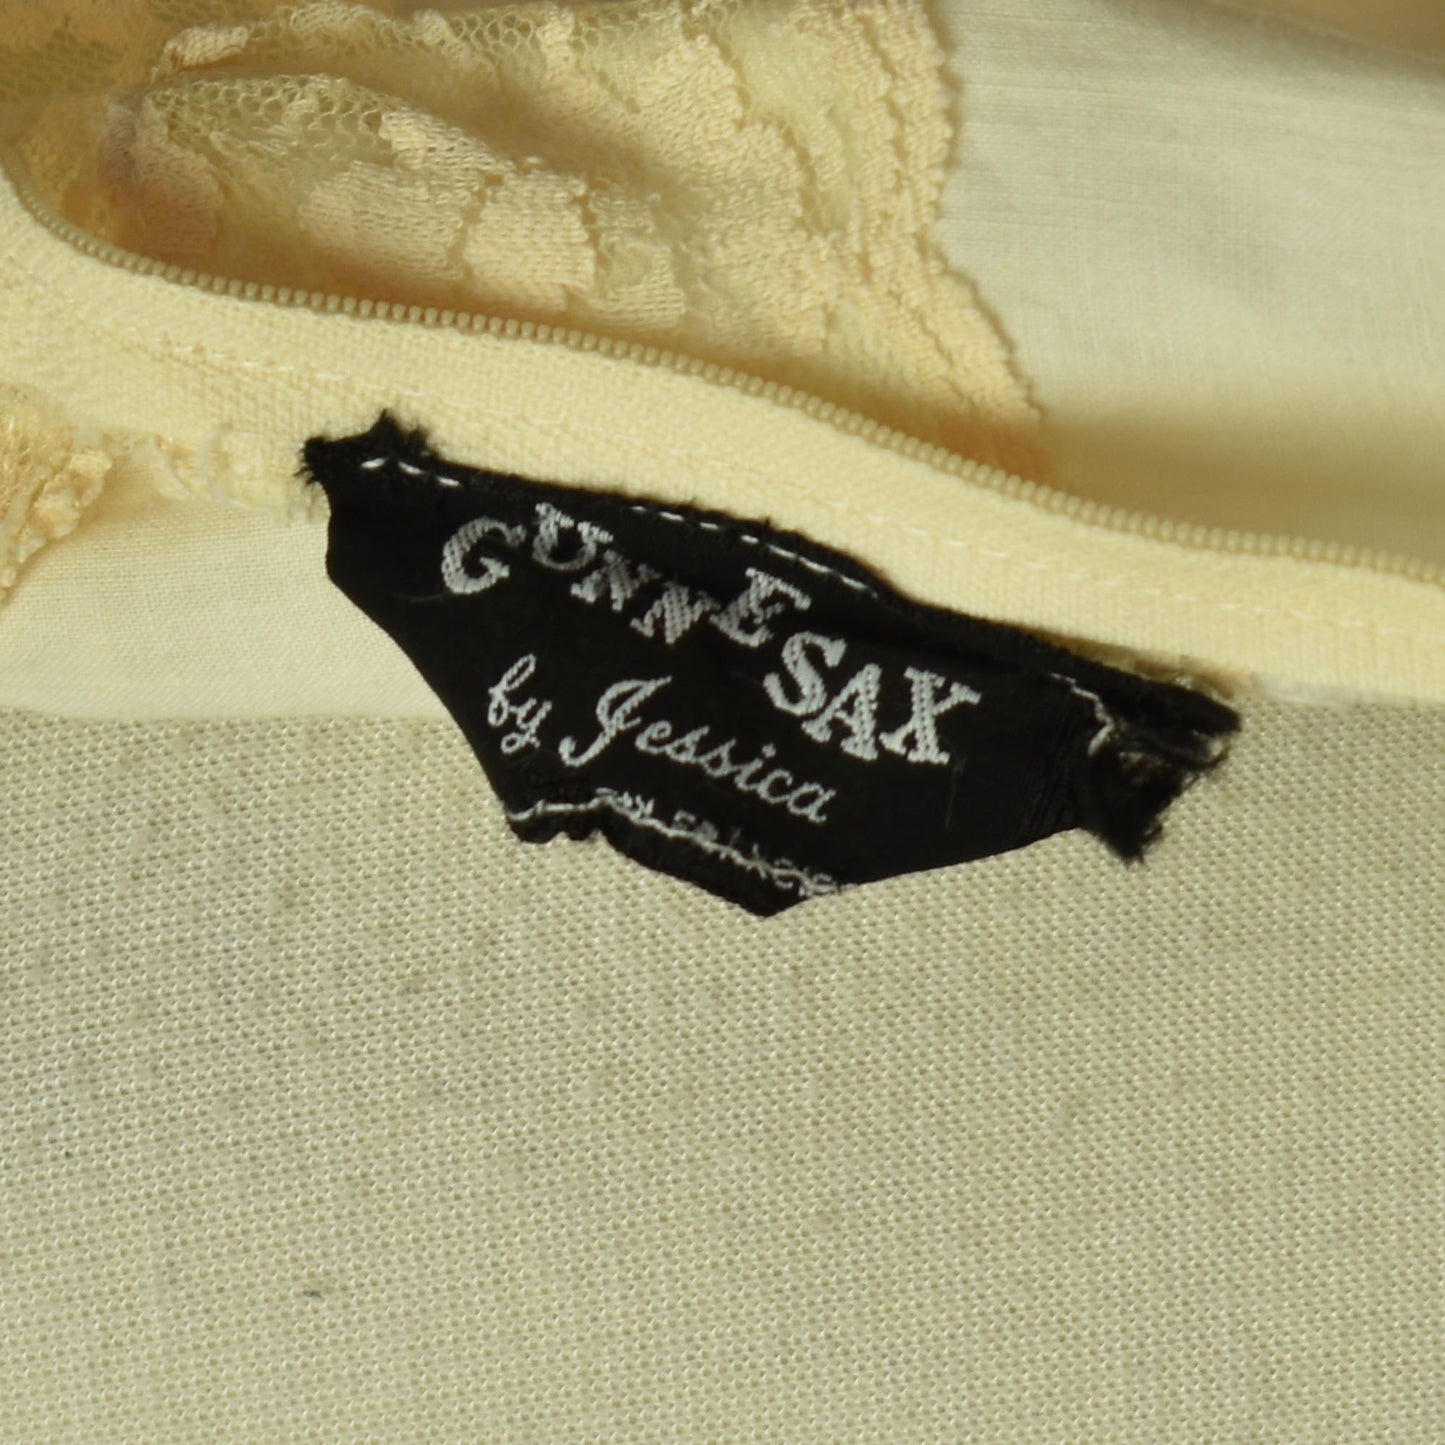 Vintage 70s Gunne Sax Victorian Black Label Cotton Lace Romantic Prairie Maxi Dress